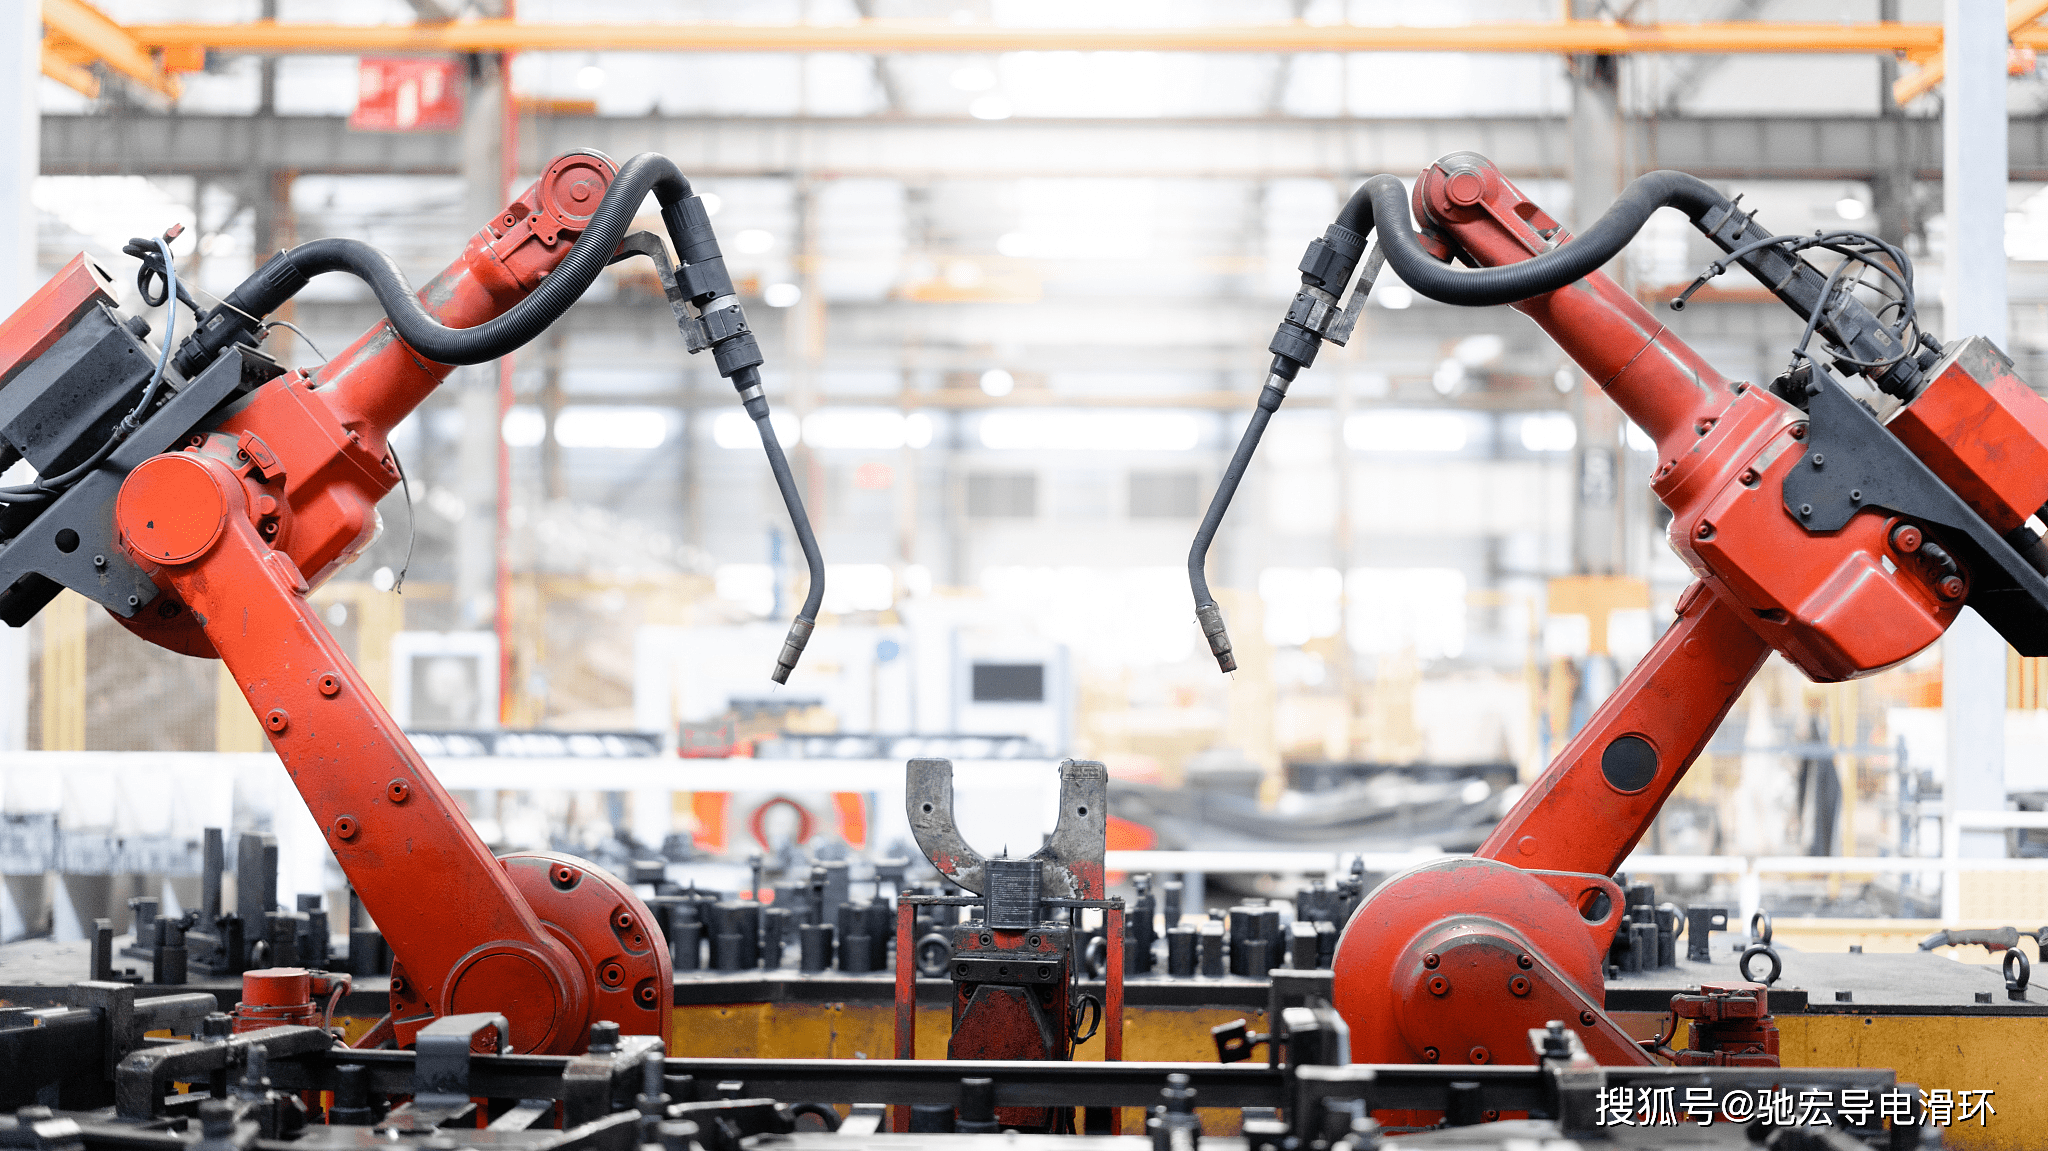 自动化生产线中的导电滑环,自动焊接机器人,滑环厂家案例介绍